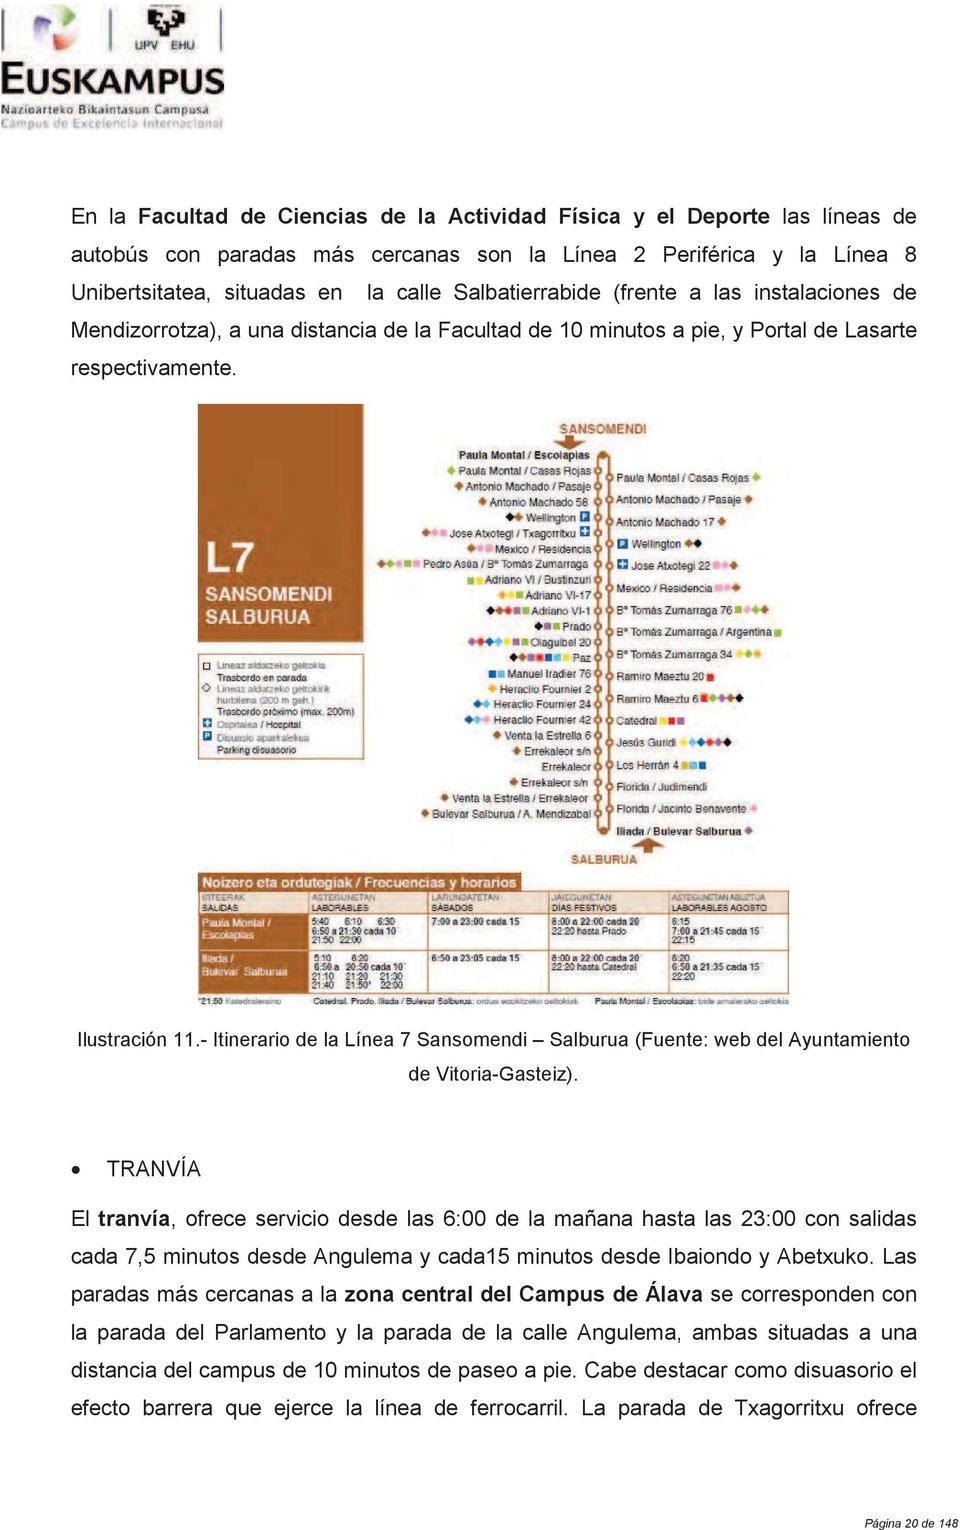 - Itinerario de la Línea 7 Sansomendi Salburua (Fuente: web del Ayuntamiento de Vitoria-Gasteiz).